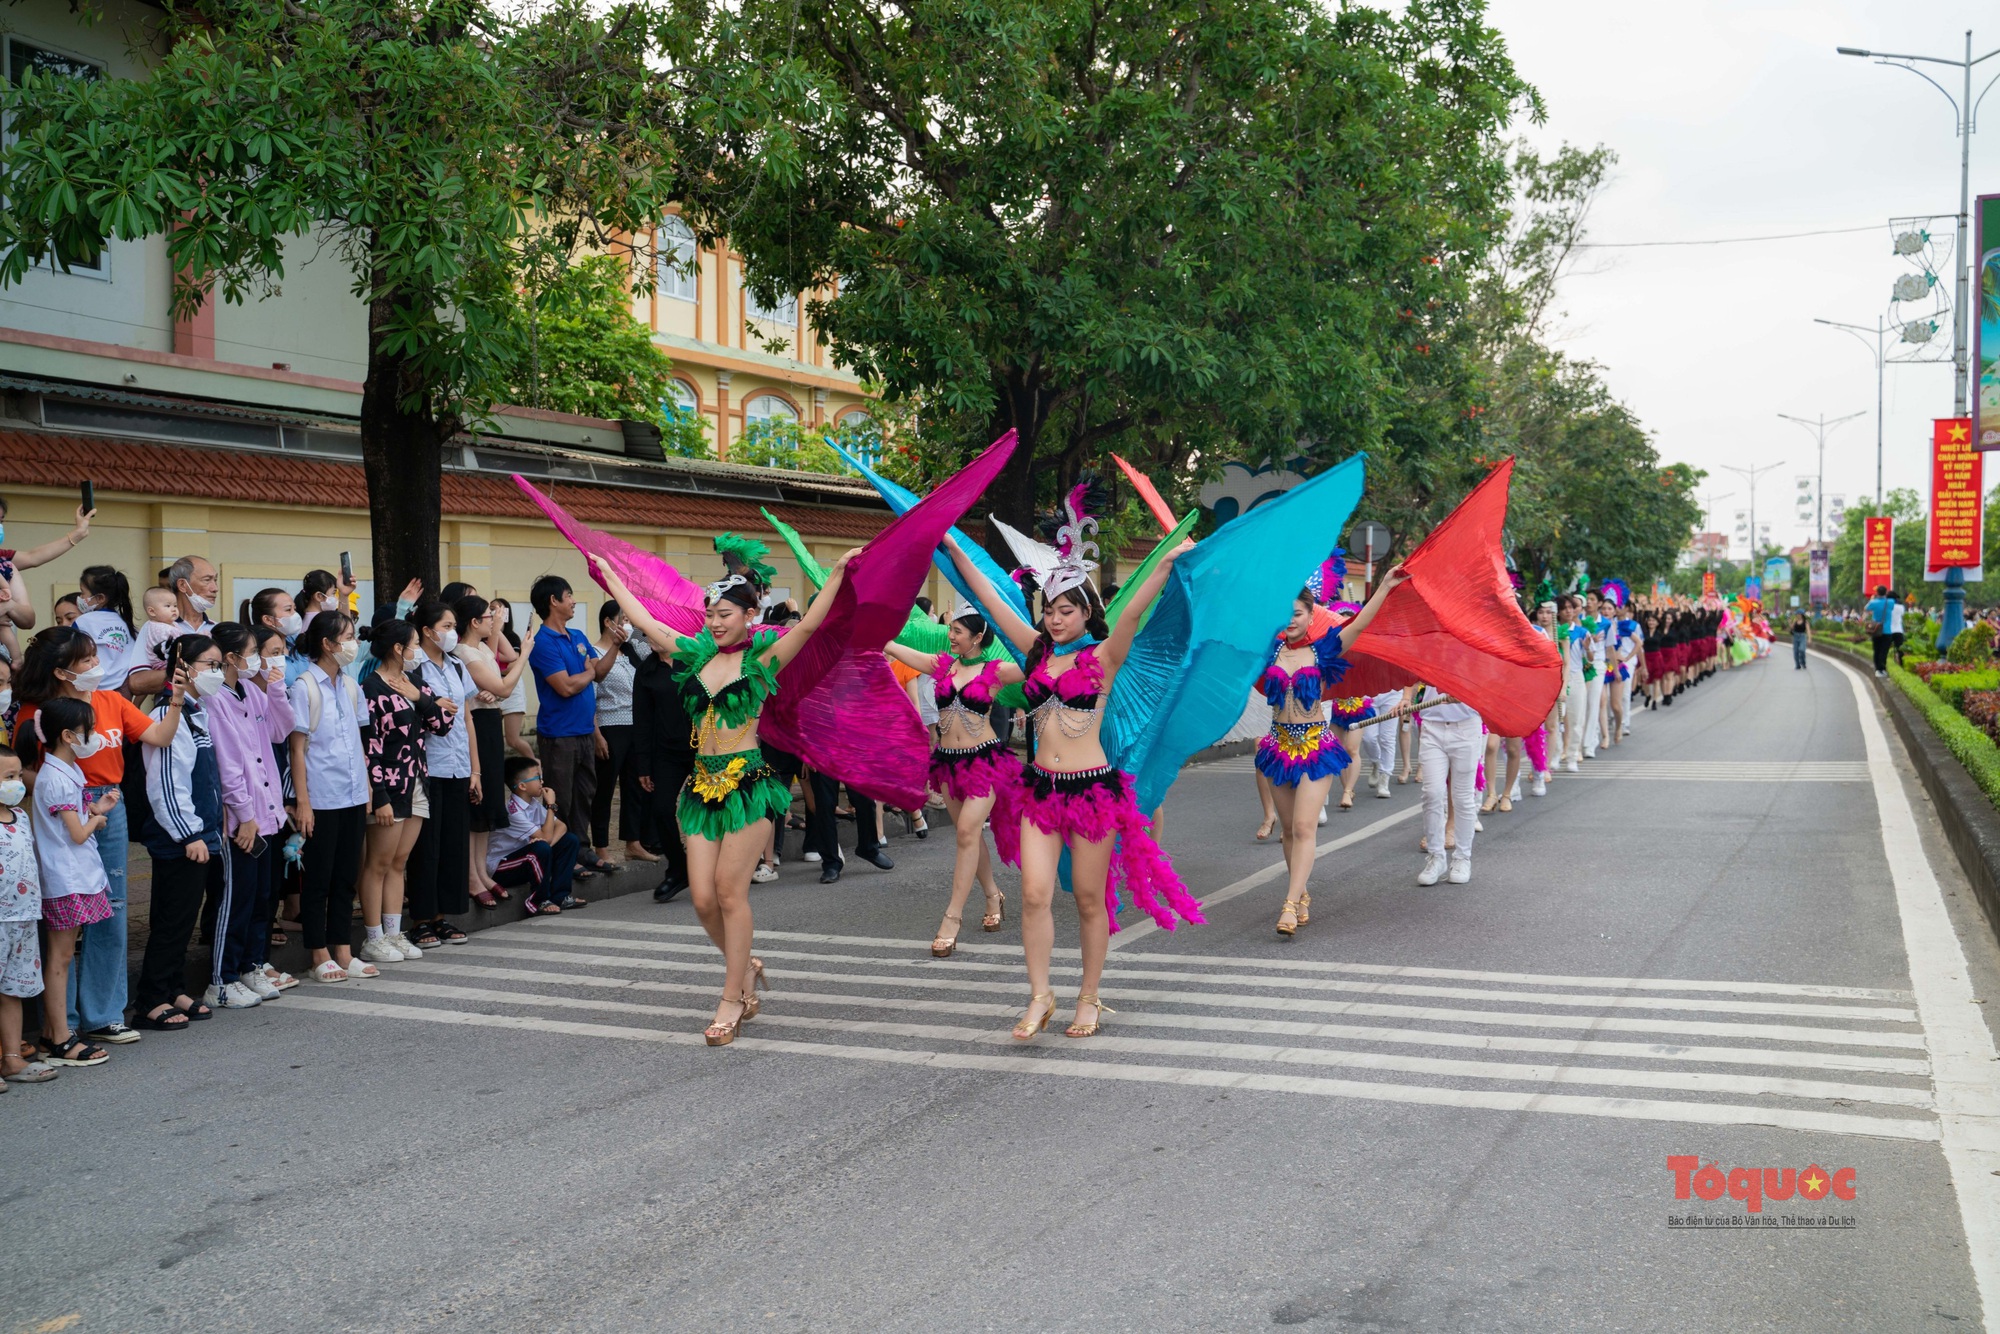 Đa sắc màu và náo nhiệt ở Lễ hội đường phố tại Quảng Bình  - Ảnh 4.